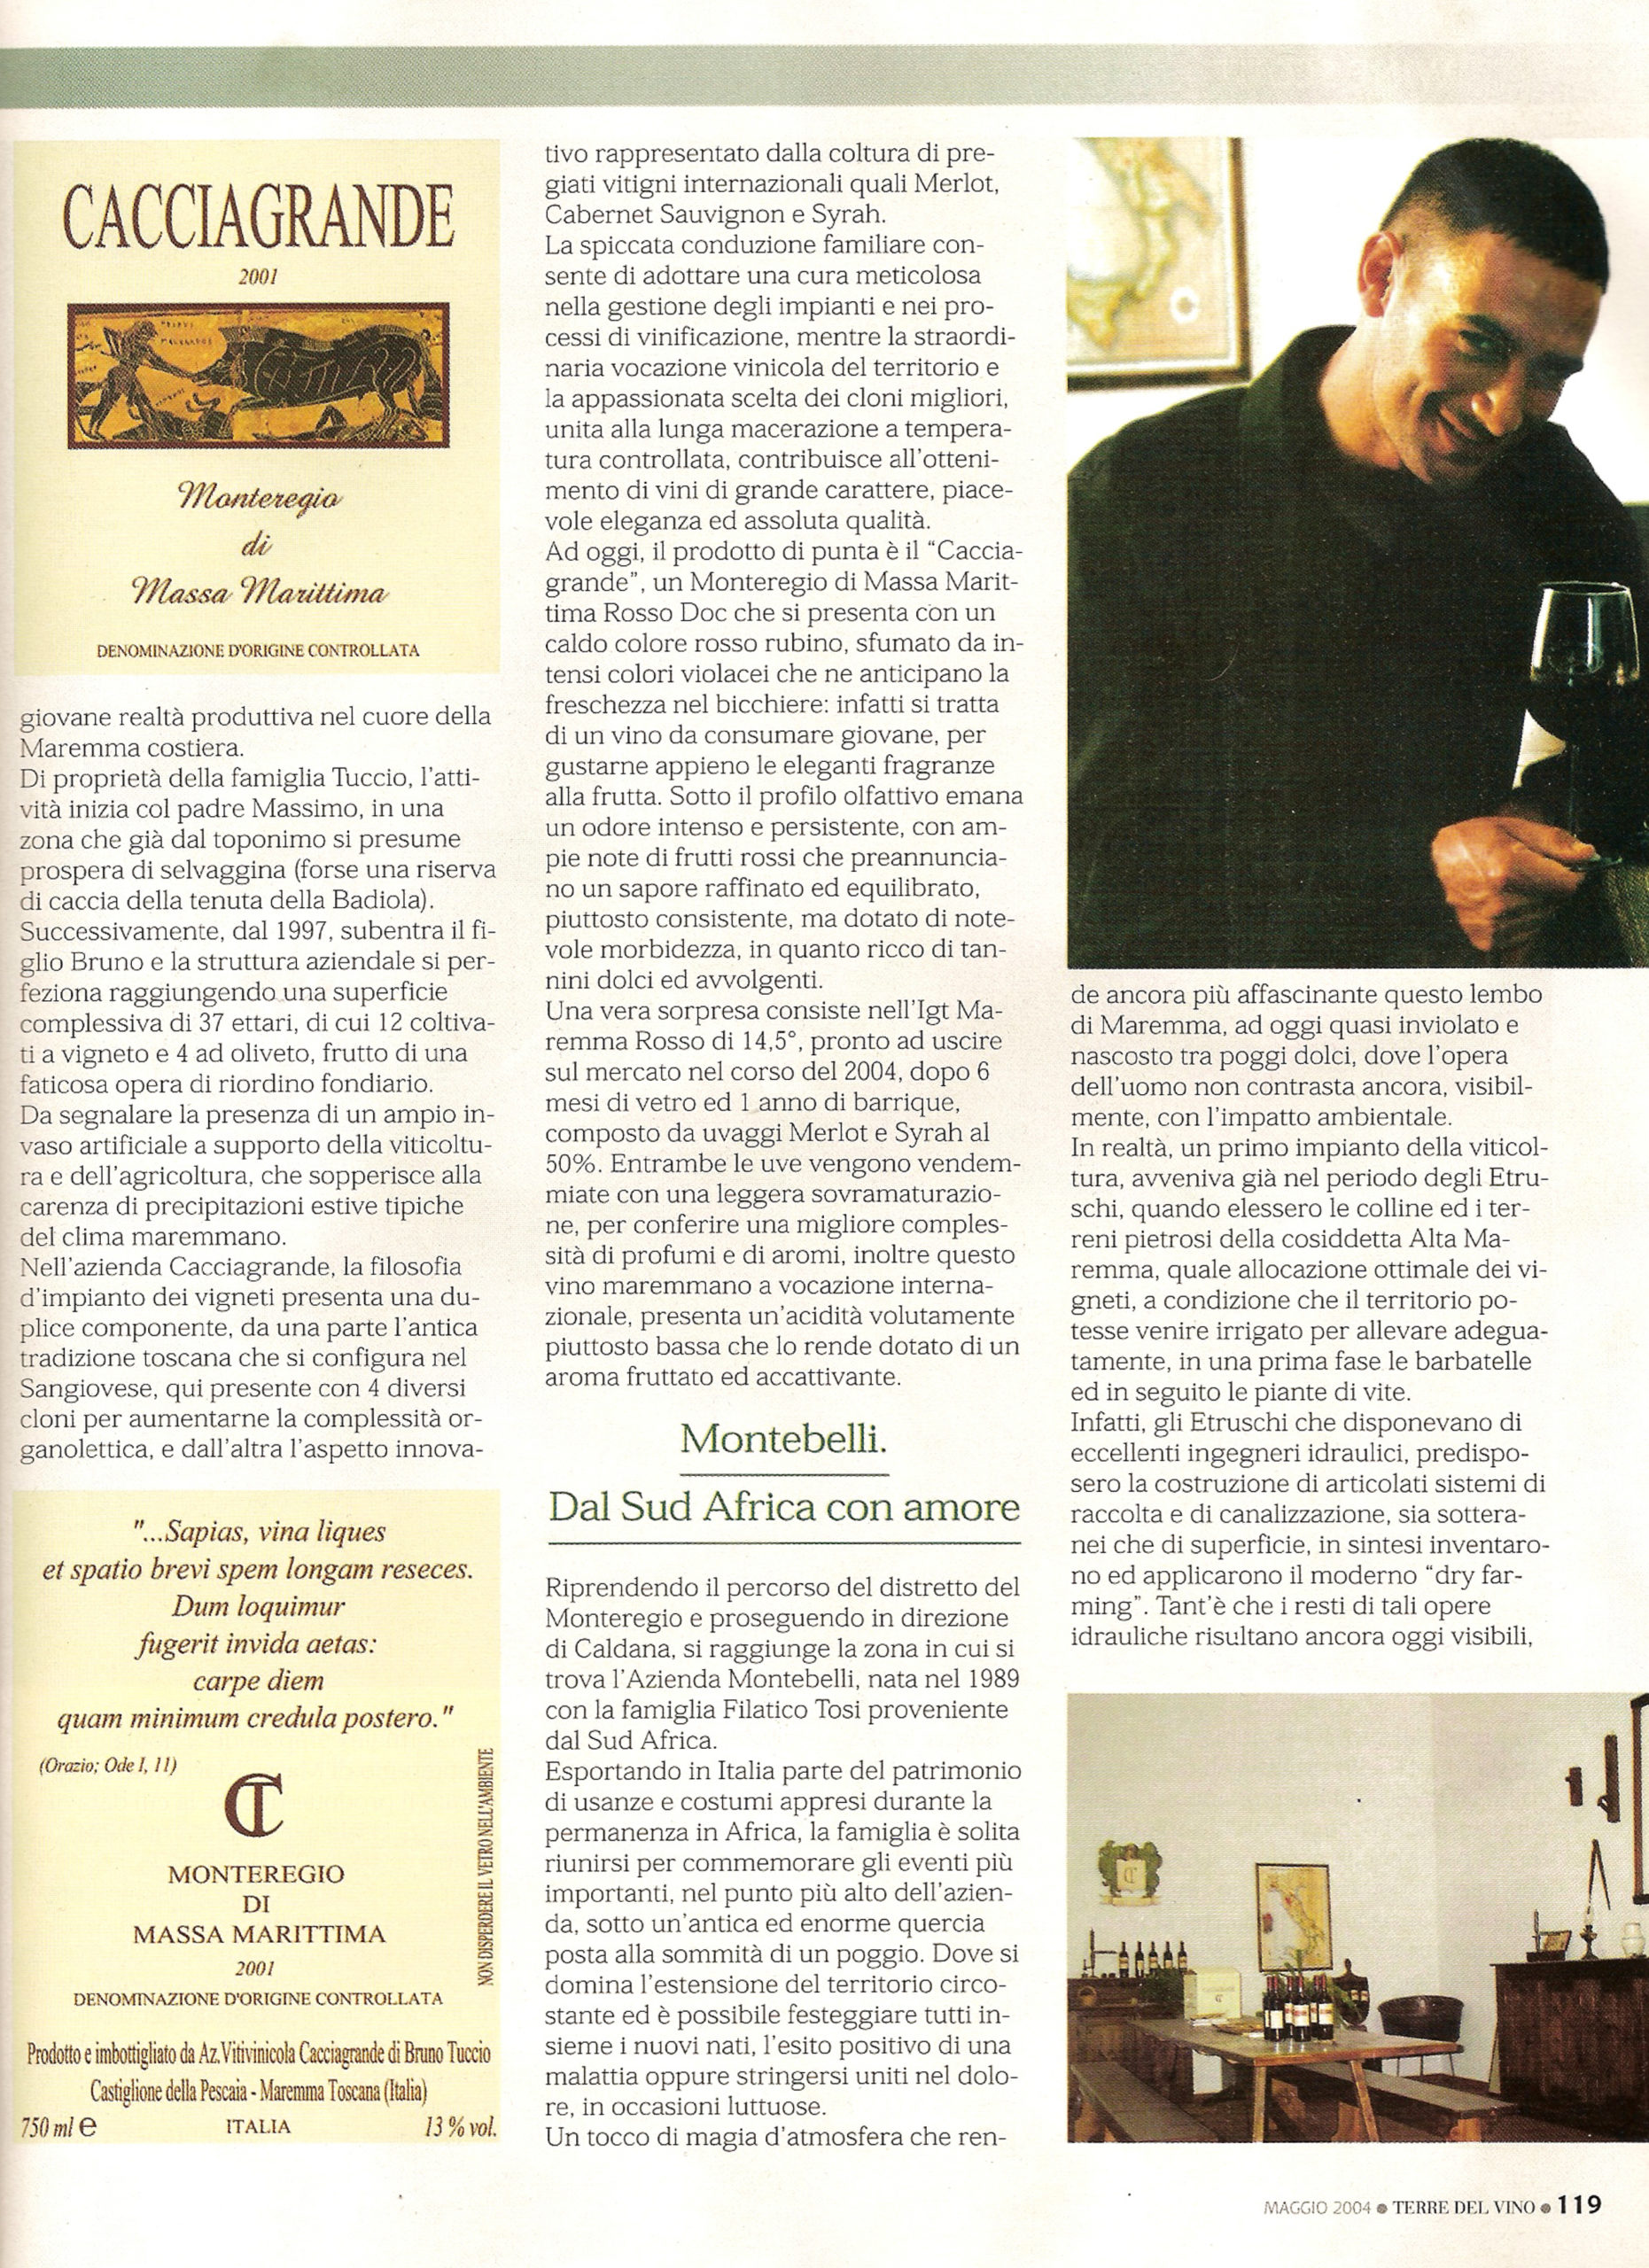 Terre del Vino 2004 - Azienda Vinicola Toscana Cacciagrande - Segnalazioni per gli enonauti che dalla costa maremmana vogliano spingersi verso l'interno alla ricerca di vini nuovi e particolari.